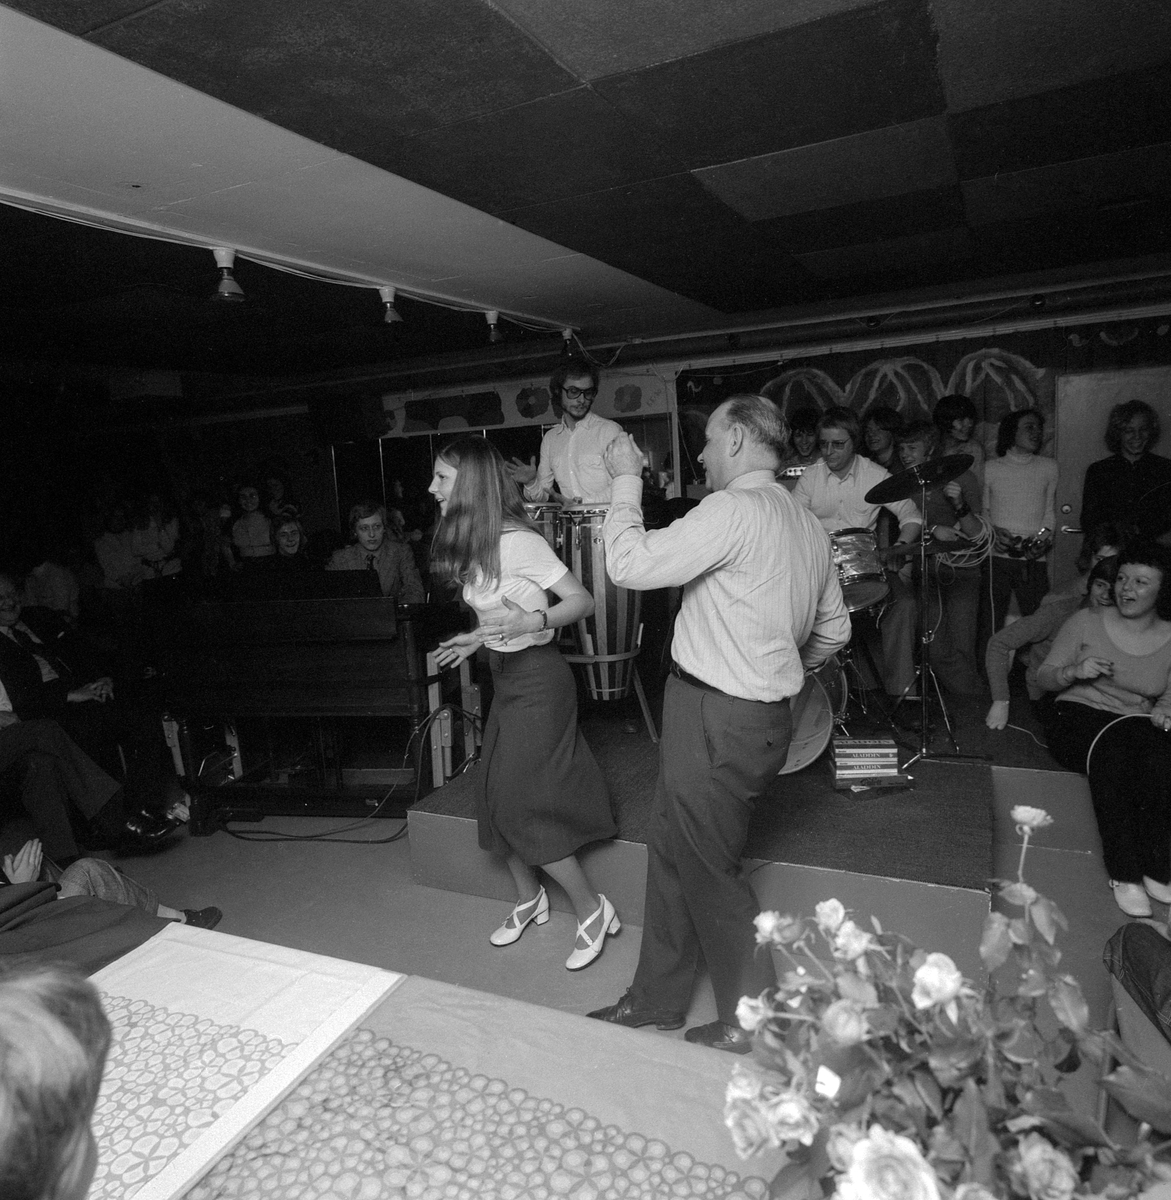 På initiativ av läraren Göran Hyland öppnades vårvintern 1971 Linköpings första skoldiskotek. Platsen var Österbergaskolan och under namnet "Power house" stod nu lokalen öppen för skolans elever för fritidshäng och dans en kväll i veckan.